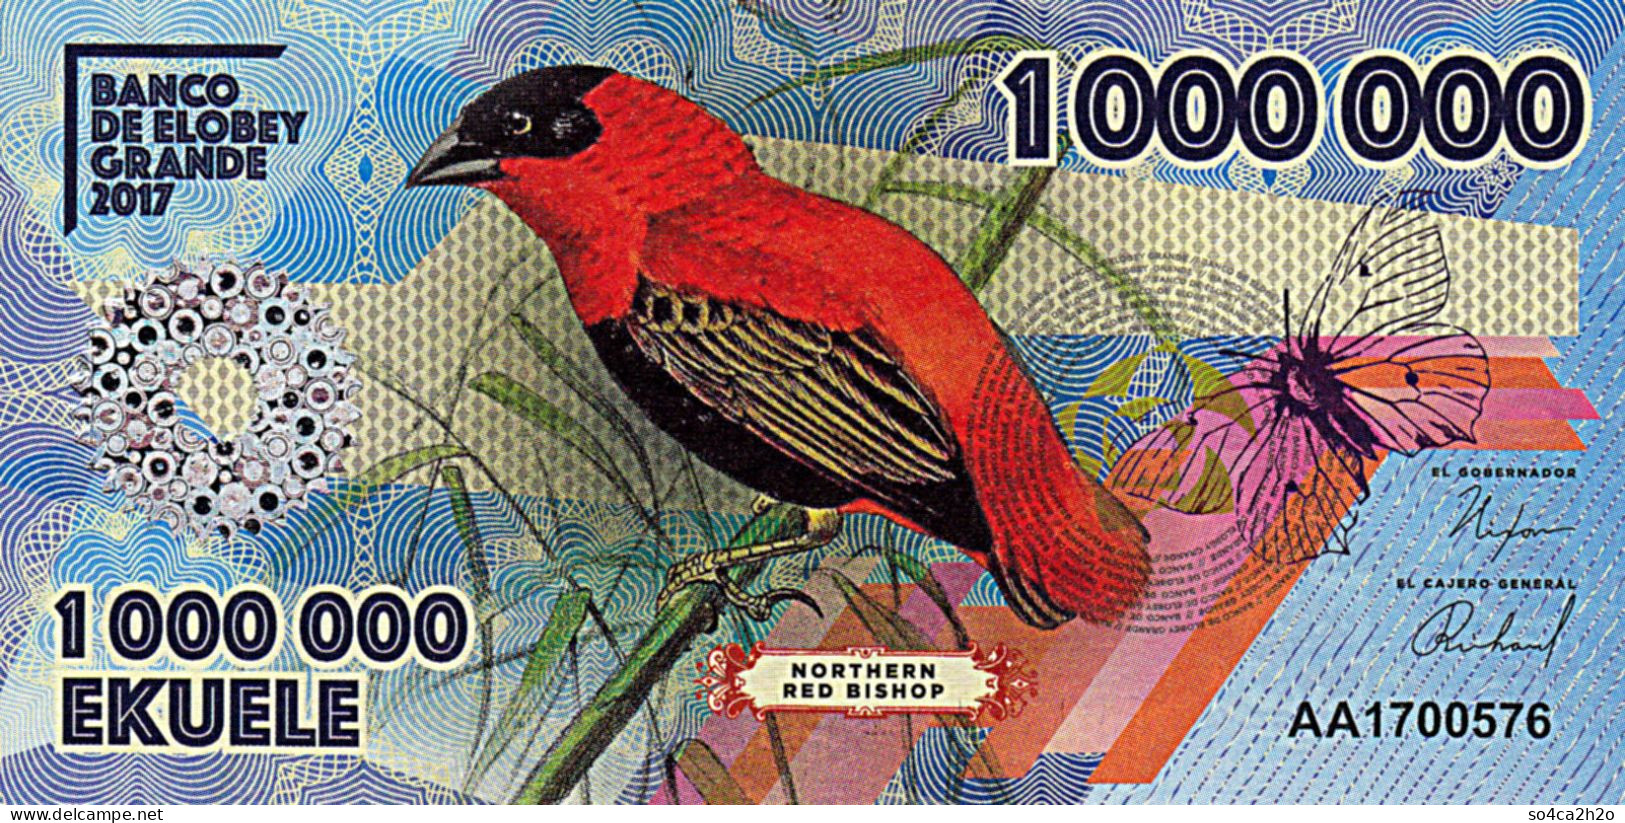 Banco De Elobey Grande 1 00 000 EKUELE 2017 L'Evêque Rouge Du Nord UNC - Equatoriaal-Guinea